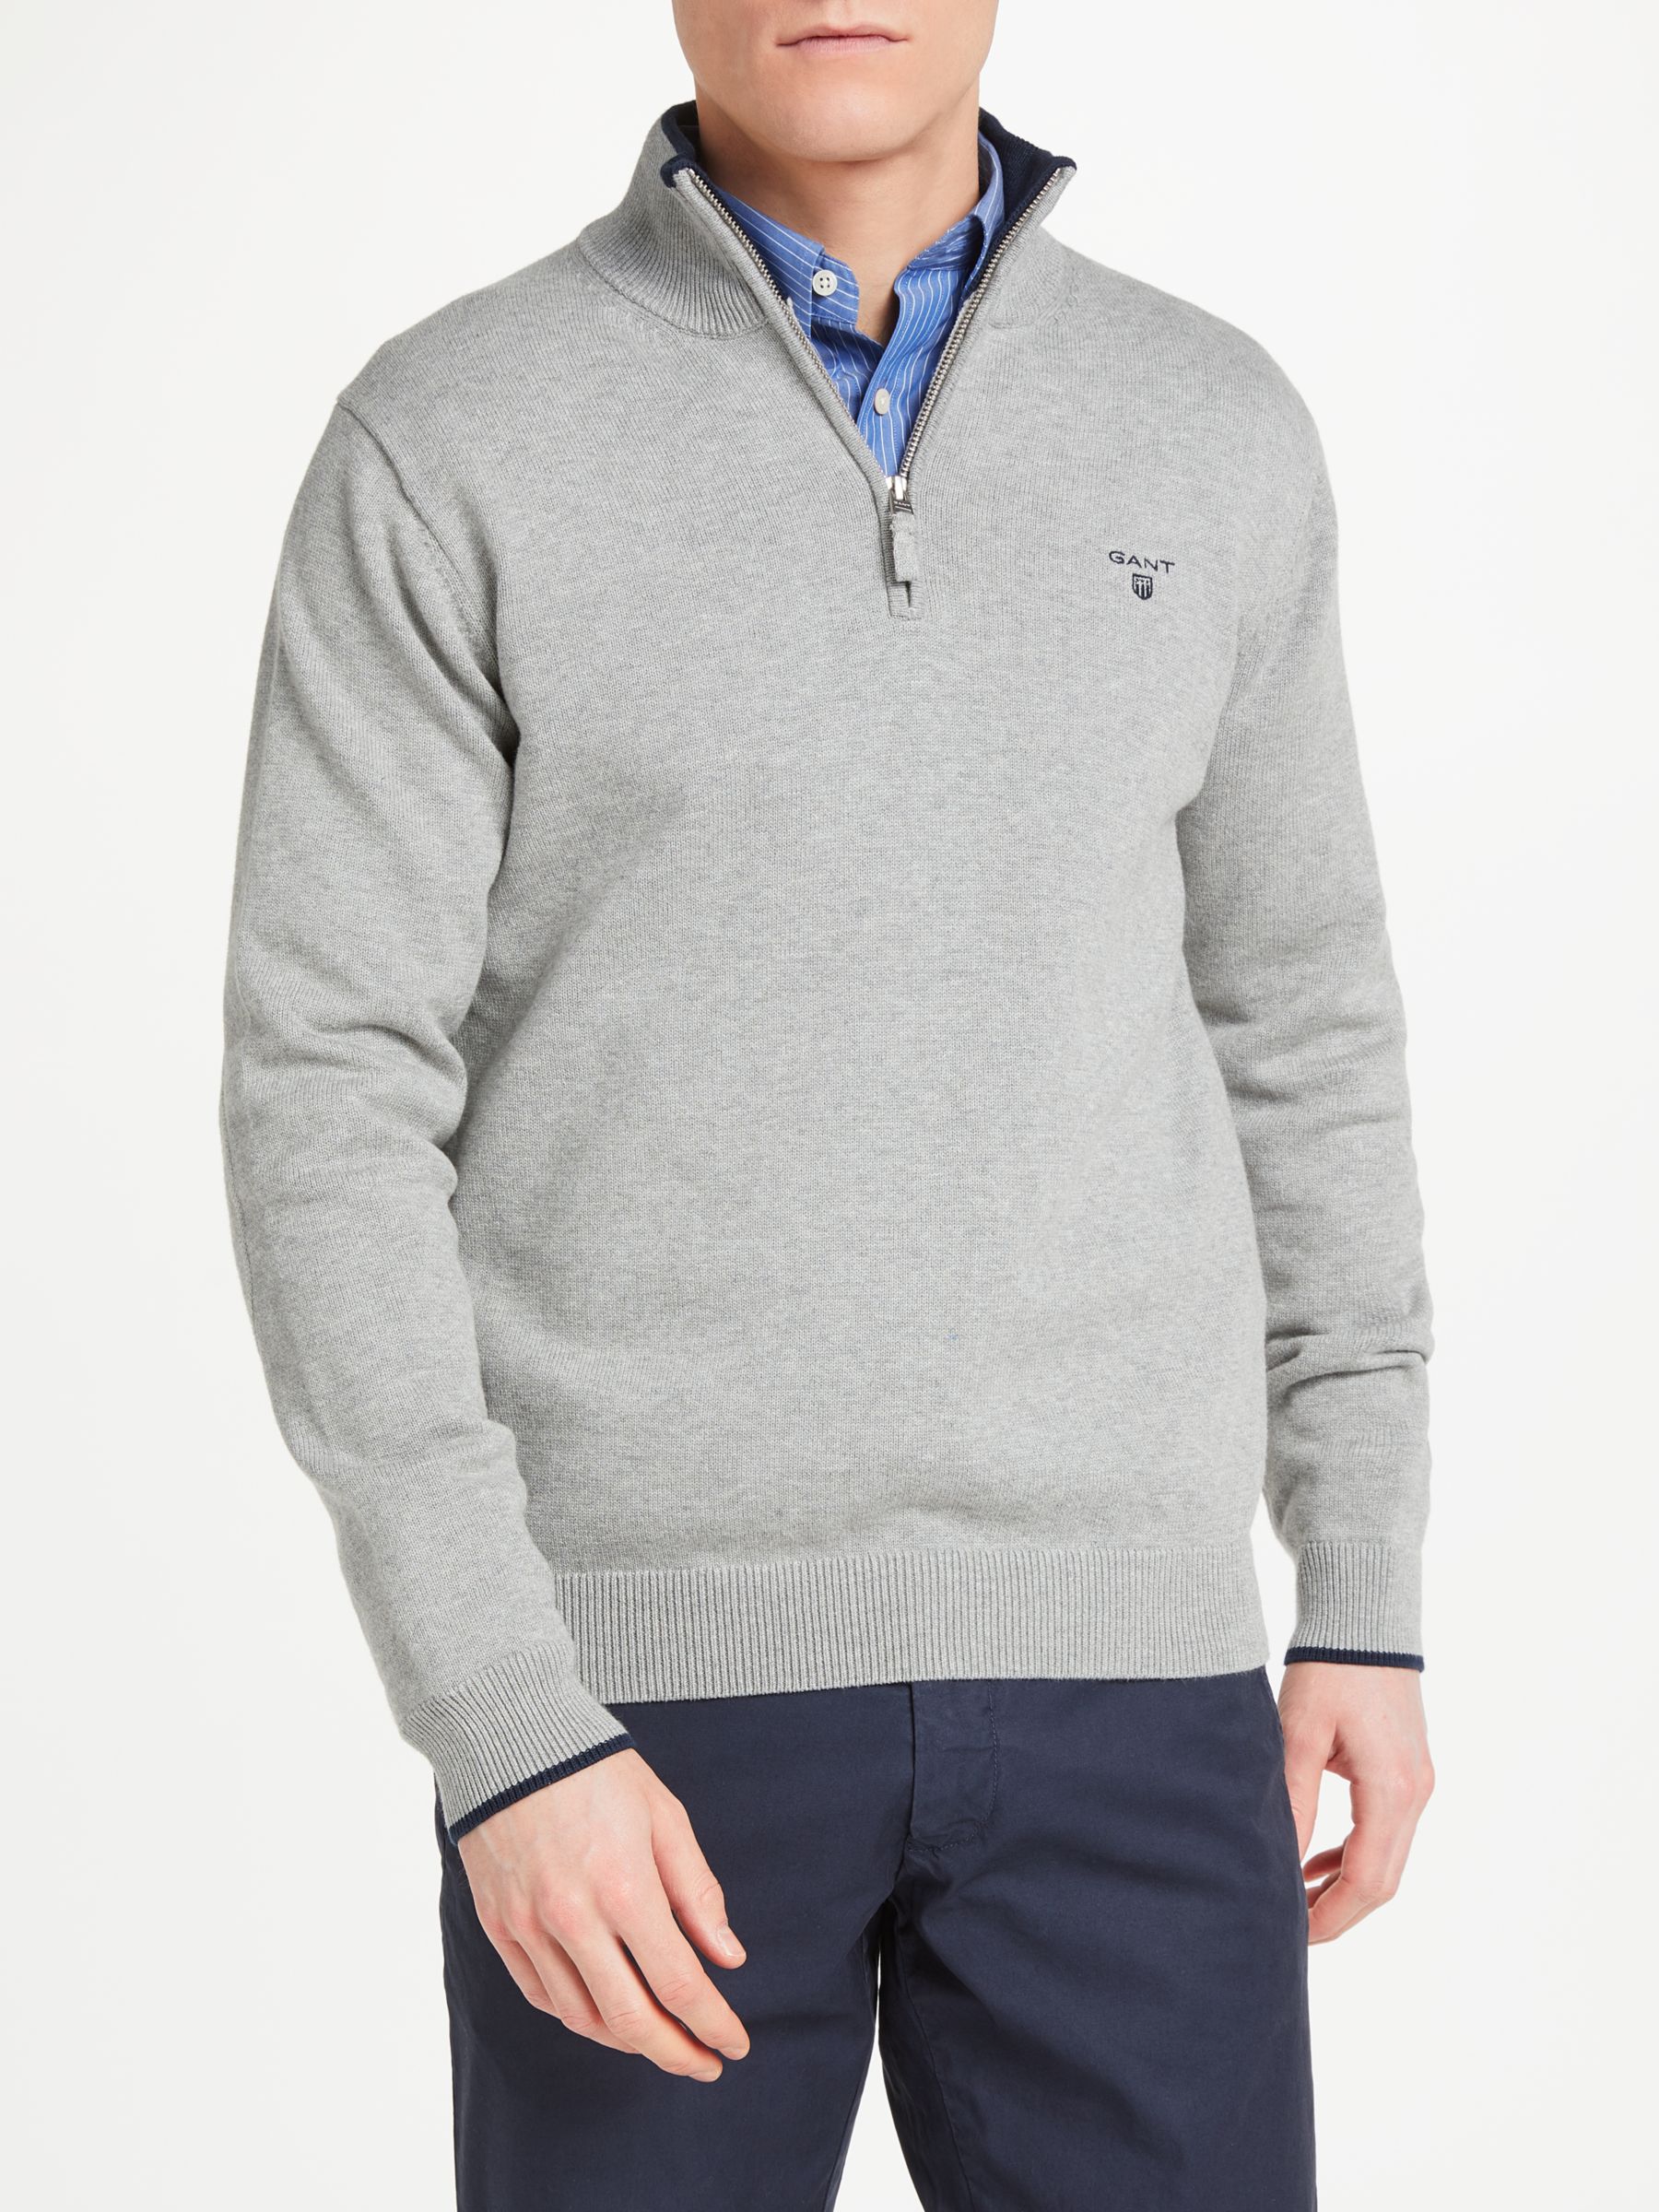 GANT Cotton Contrast Half Zip Sweatshirt, Grey, XL